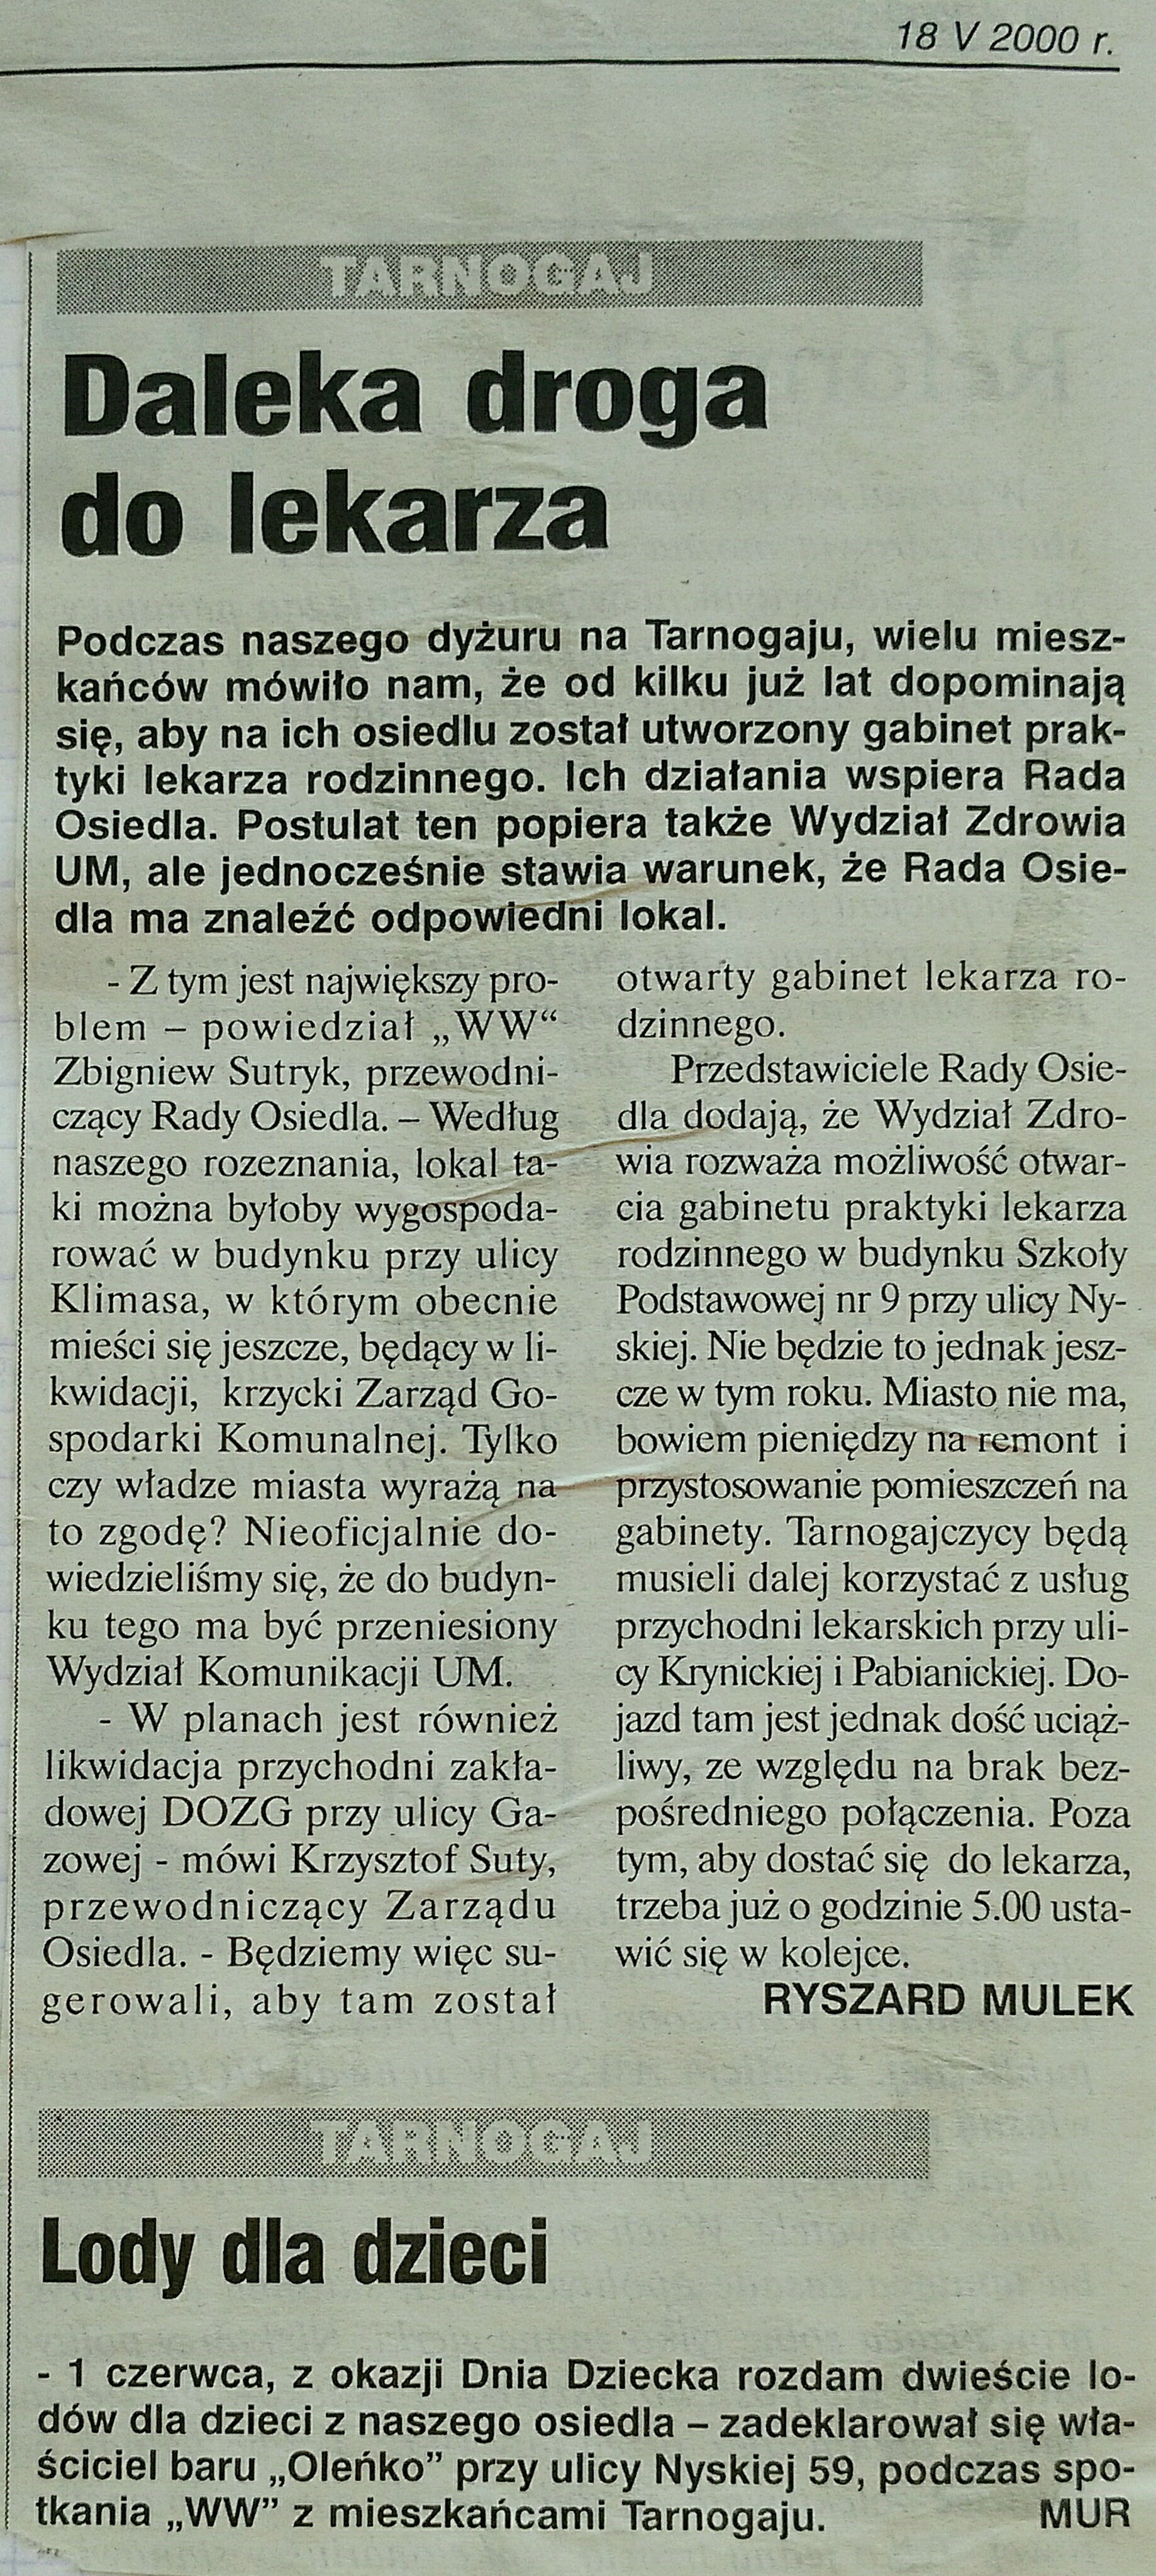 15 2000 maj 18 Wieczór Wrocławia